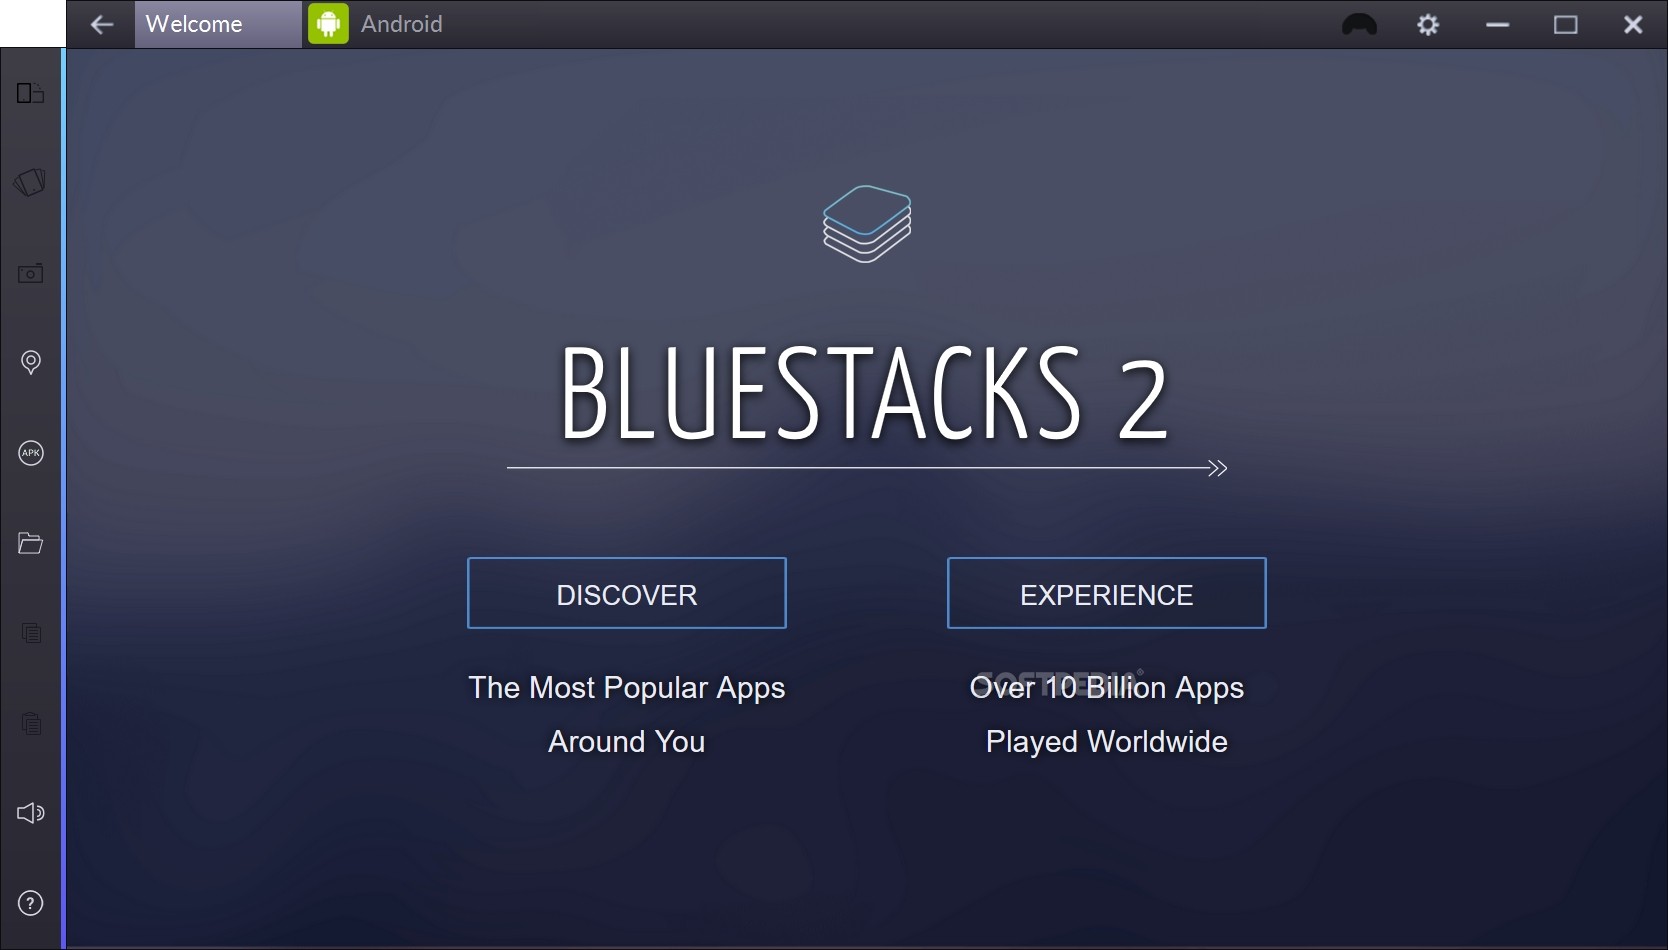 bluestack app downloader